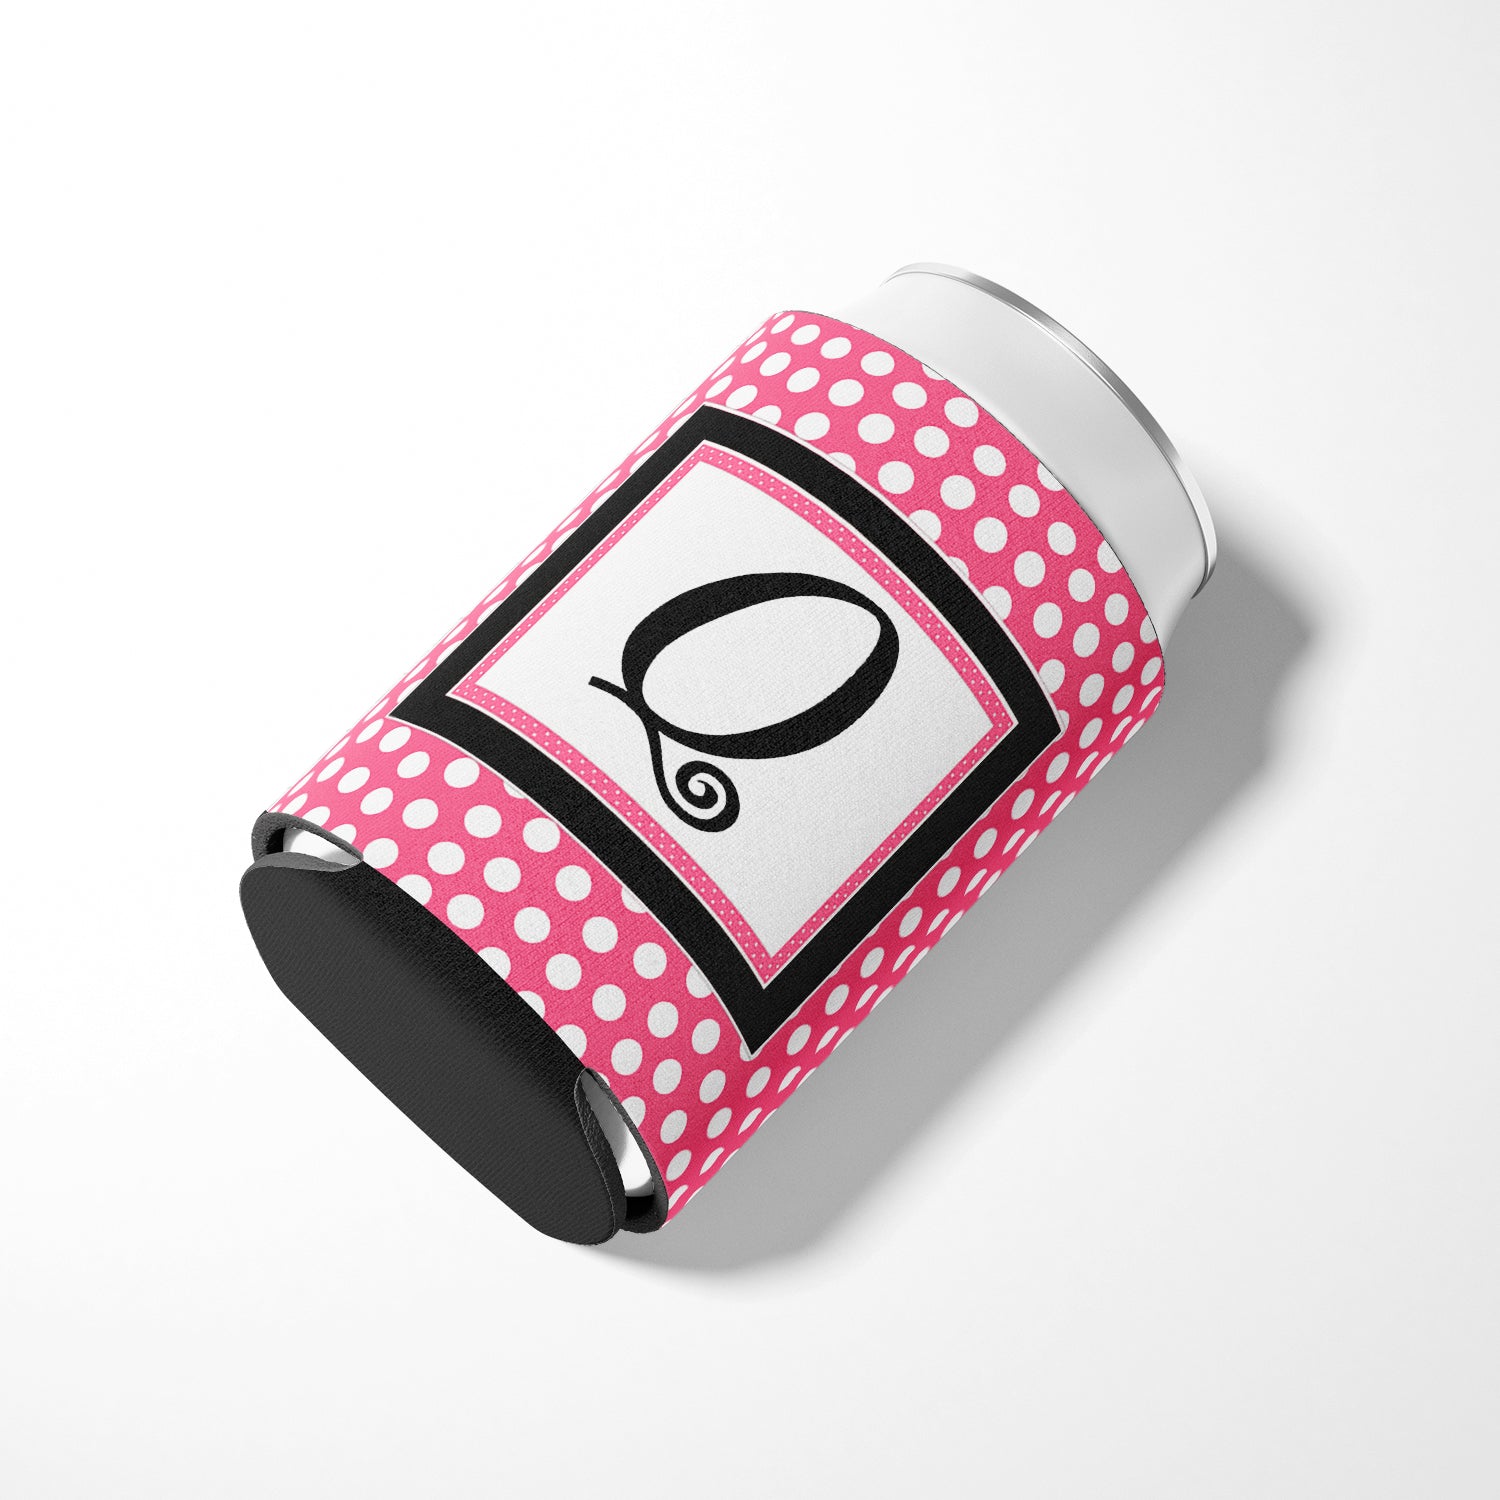 Letter Q Initial Monogram - Pink Black Polka Dots Can or Bottle Beverage Insulator Hugger.